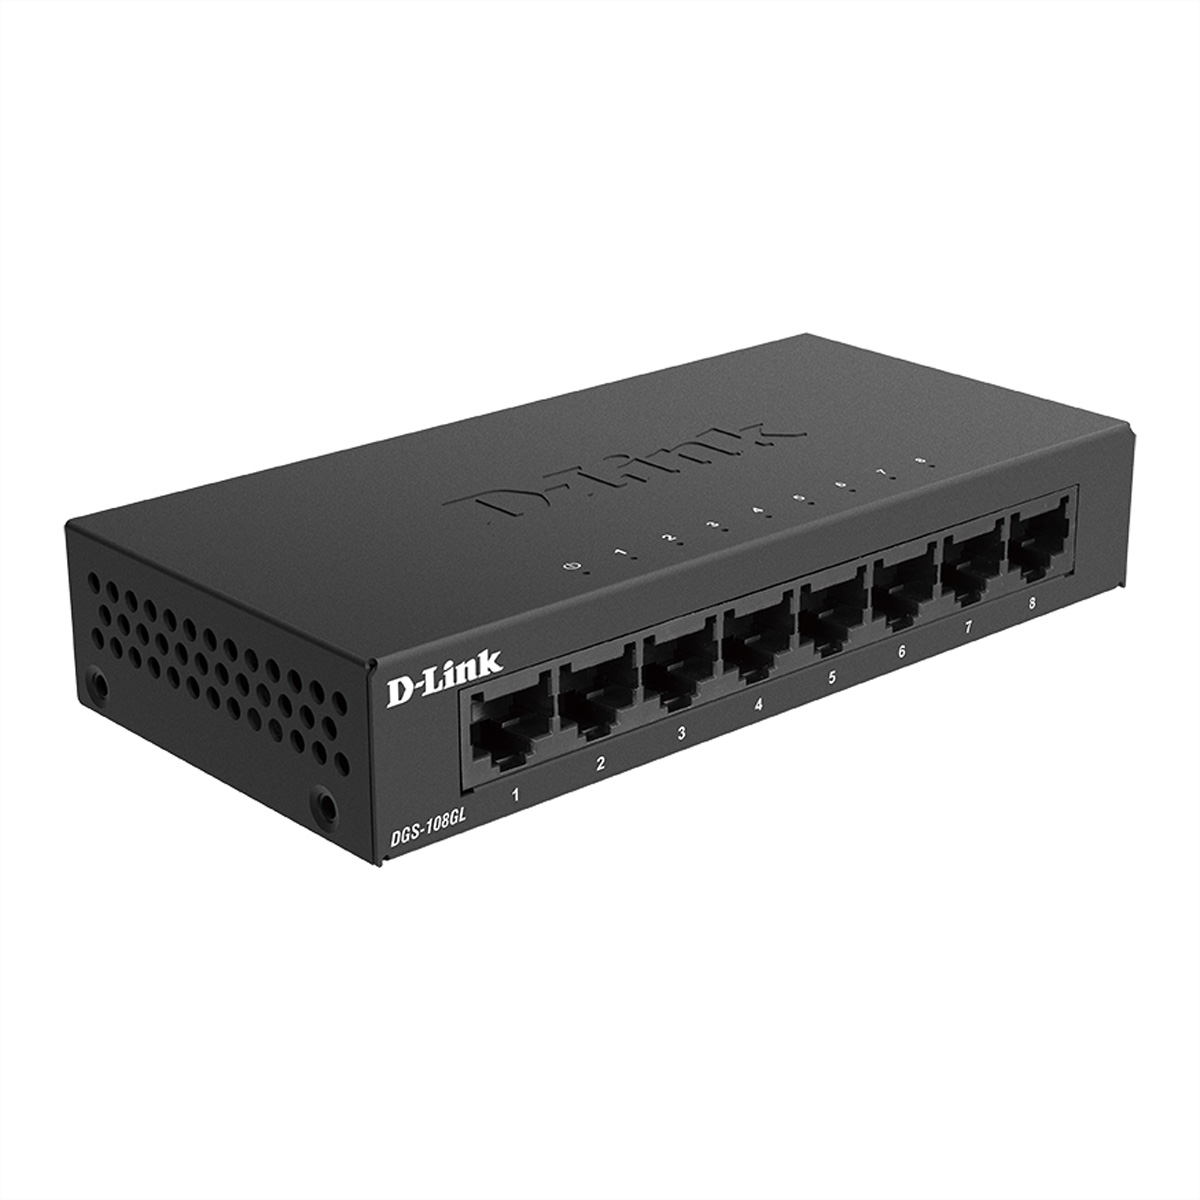 D-LINK DGS-108GL/E 8-Port Gigabit Switch Light Switch Ethernet Gigabit